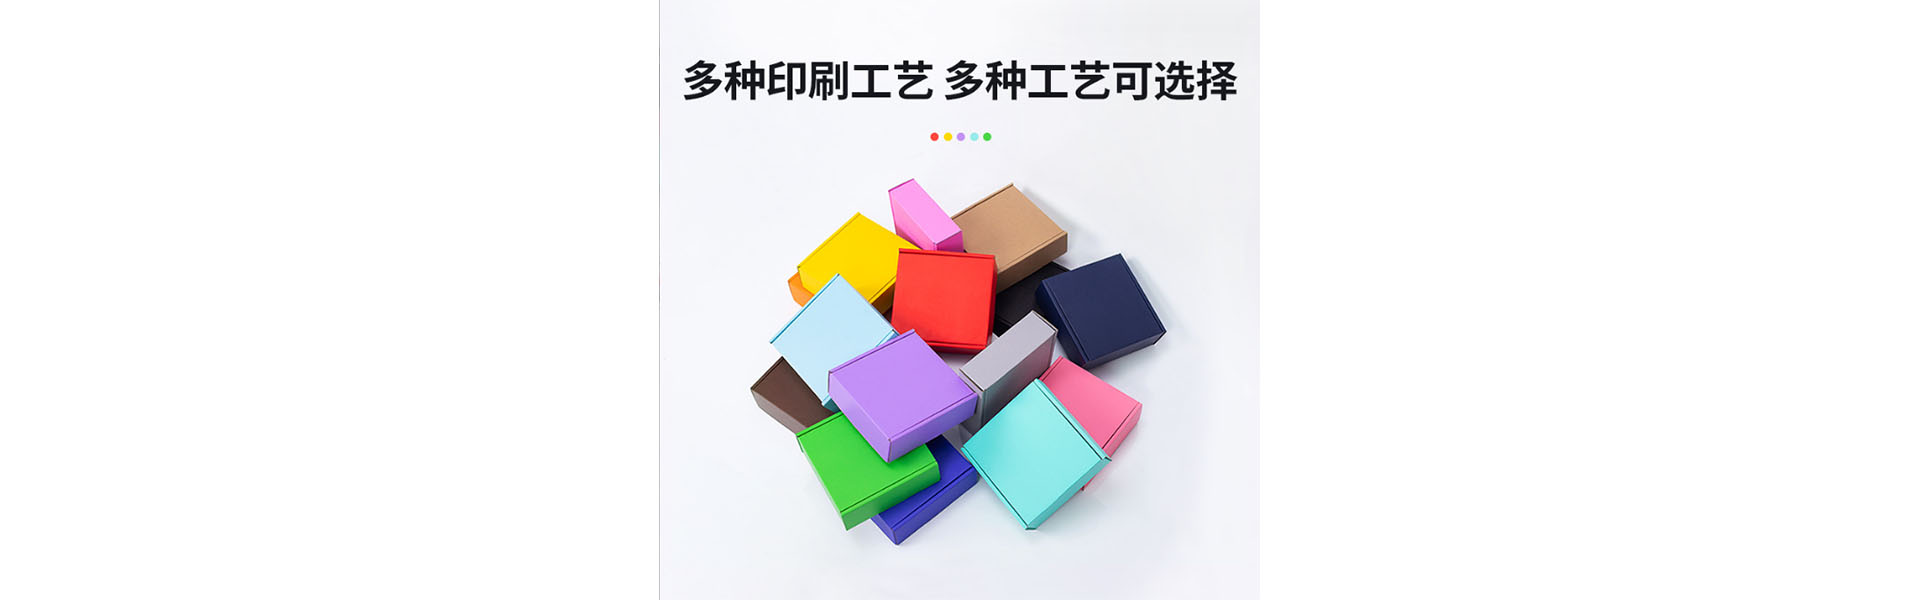 Dongguan Yuanying Packaging Design Co., Ltd